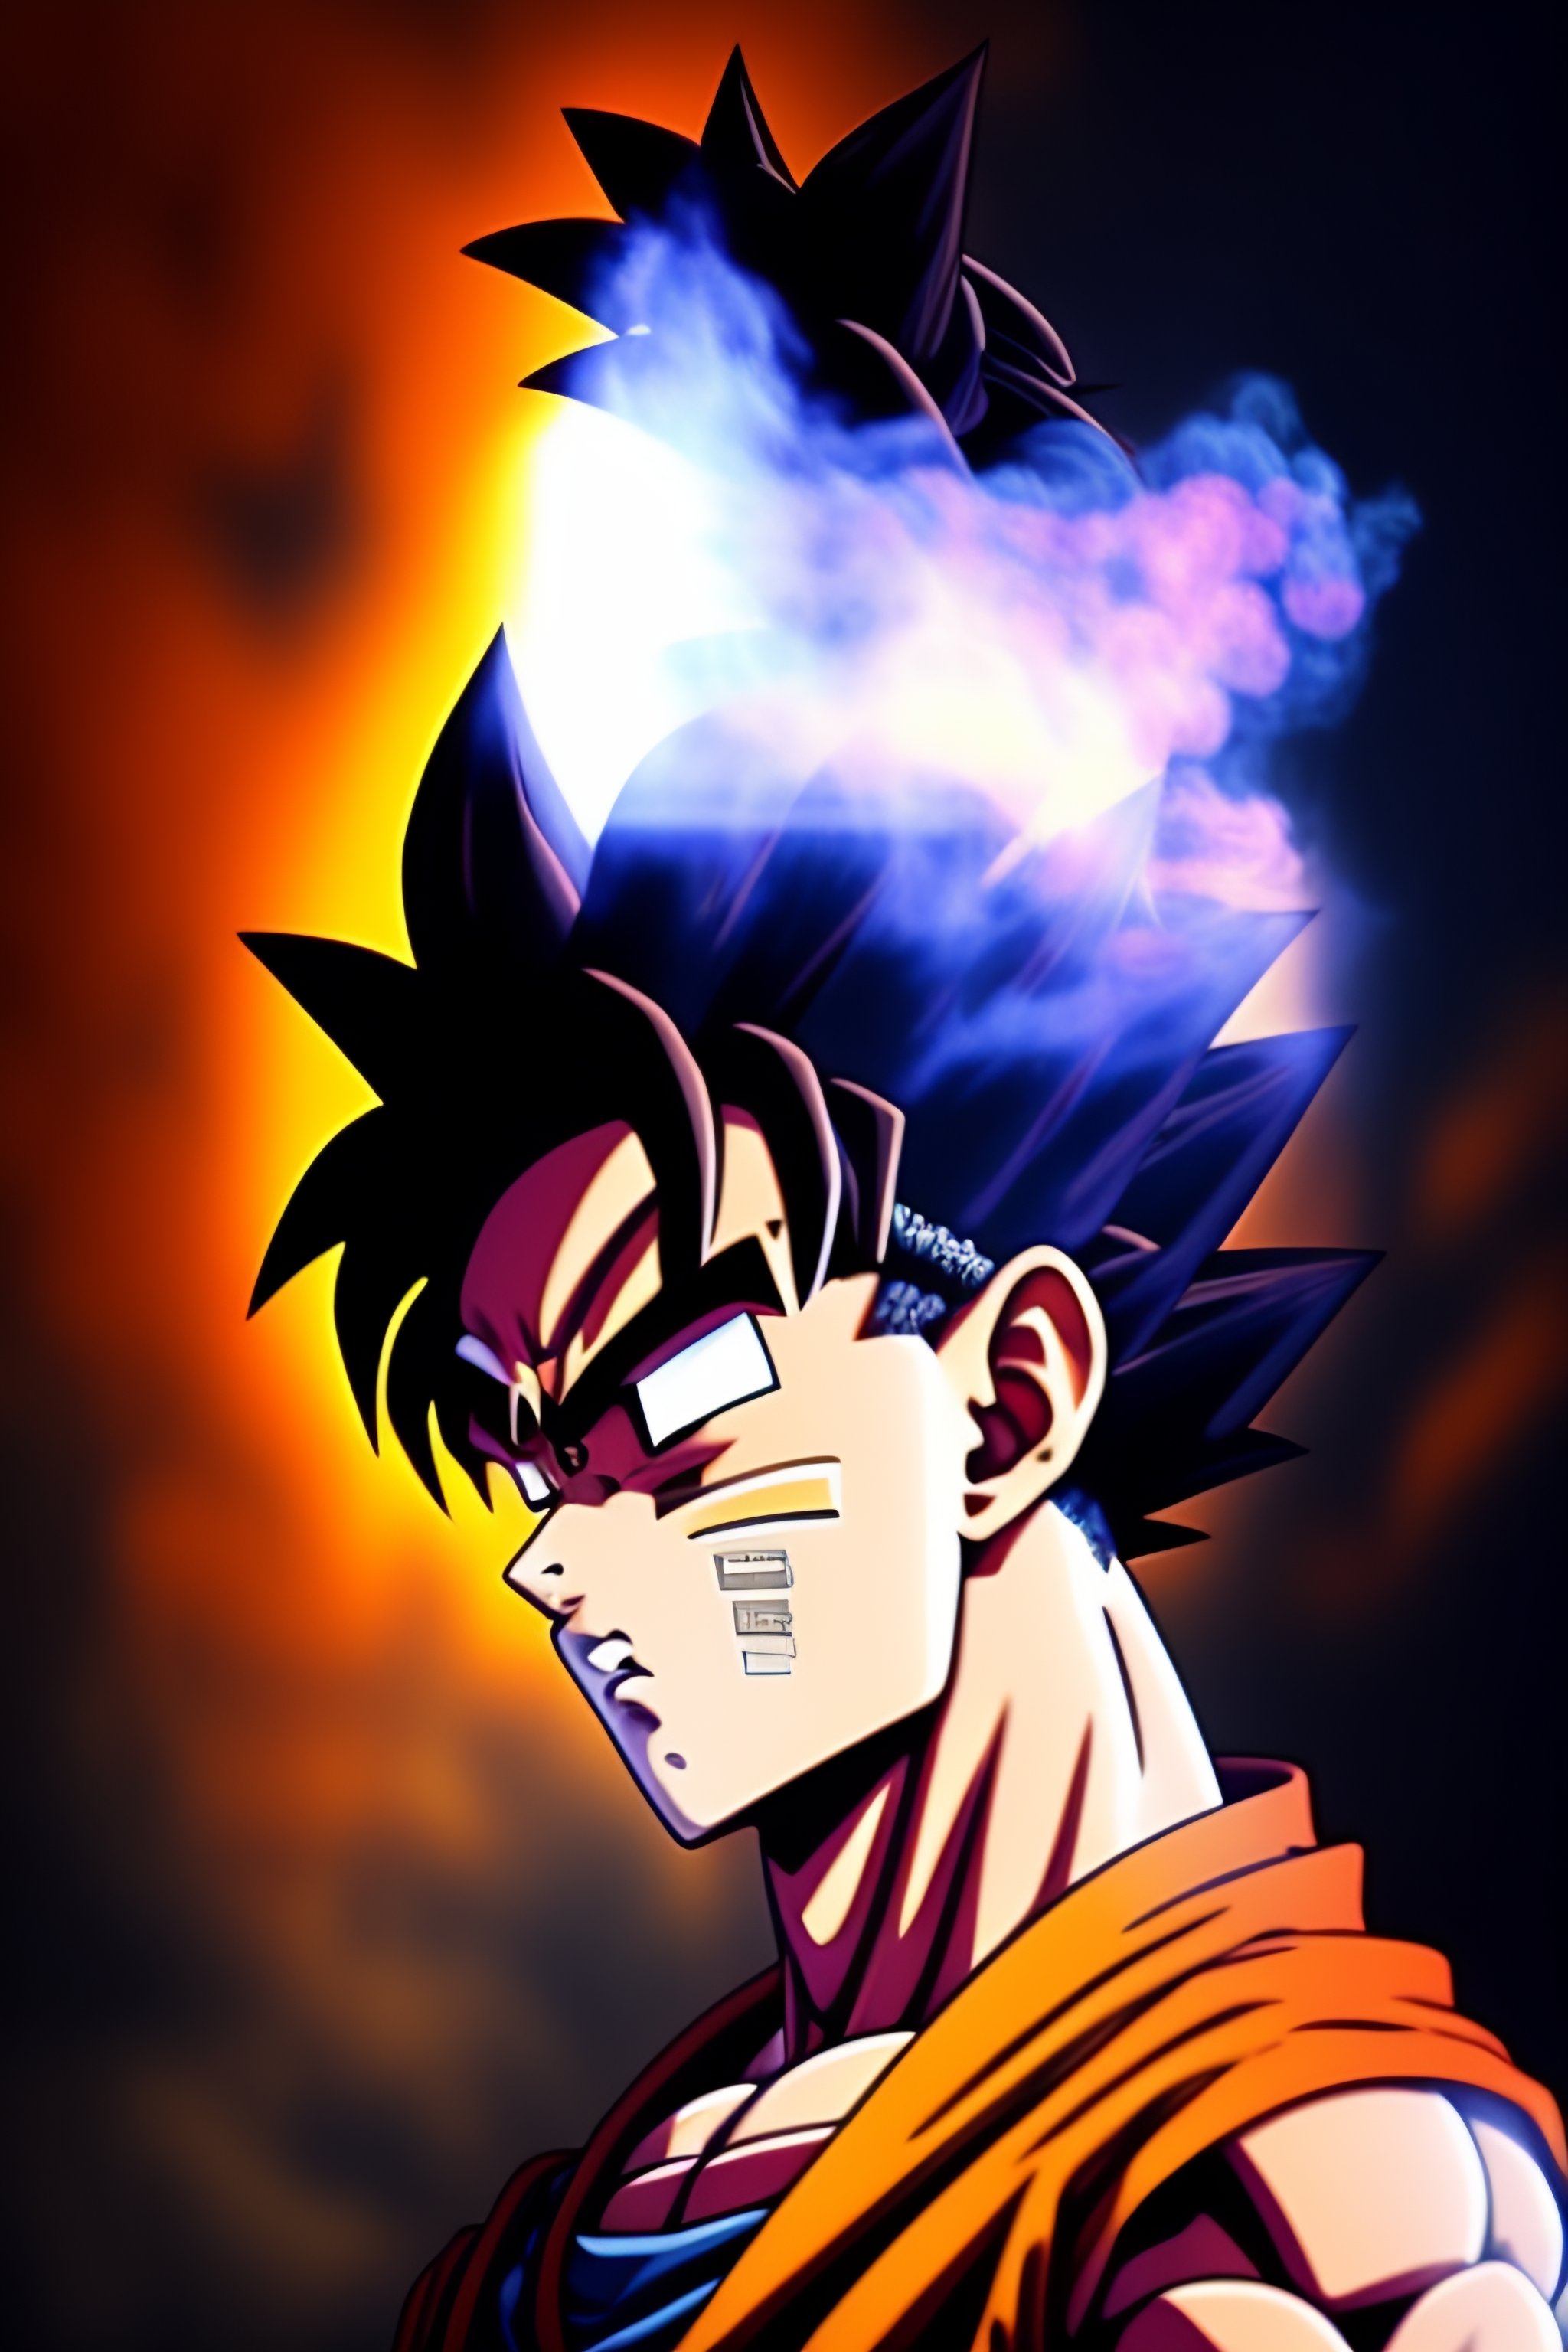 Lexica - Goku smoking a cigarette